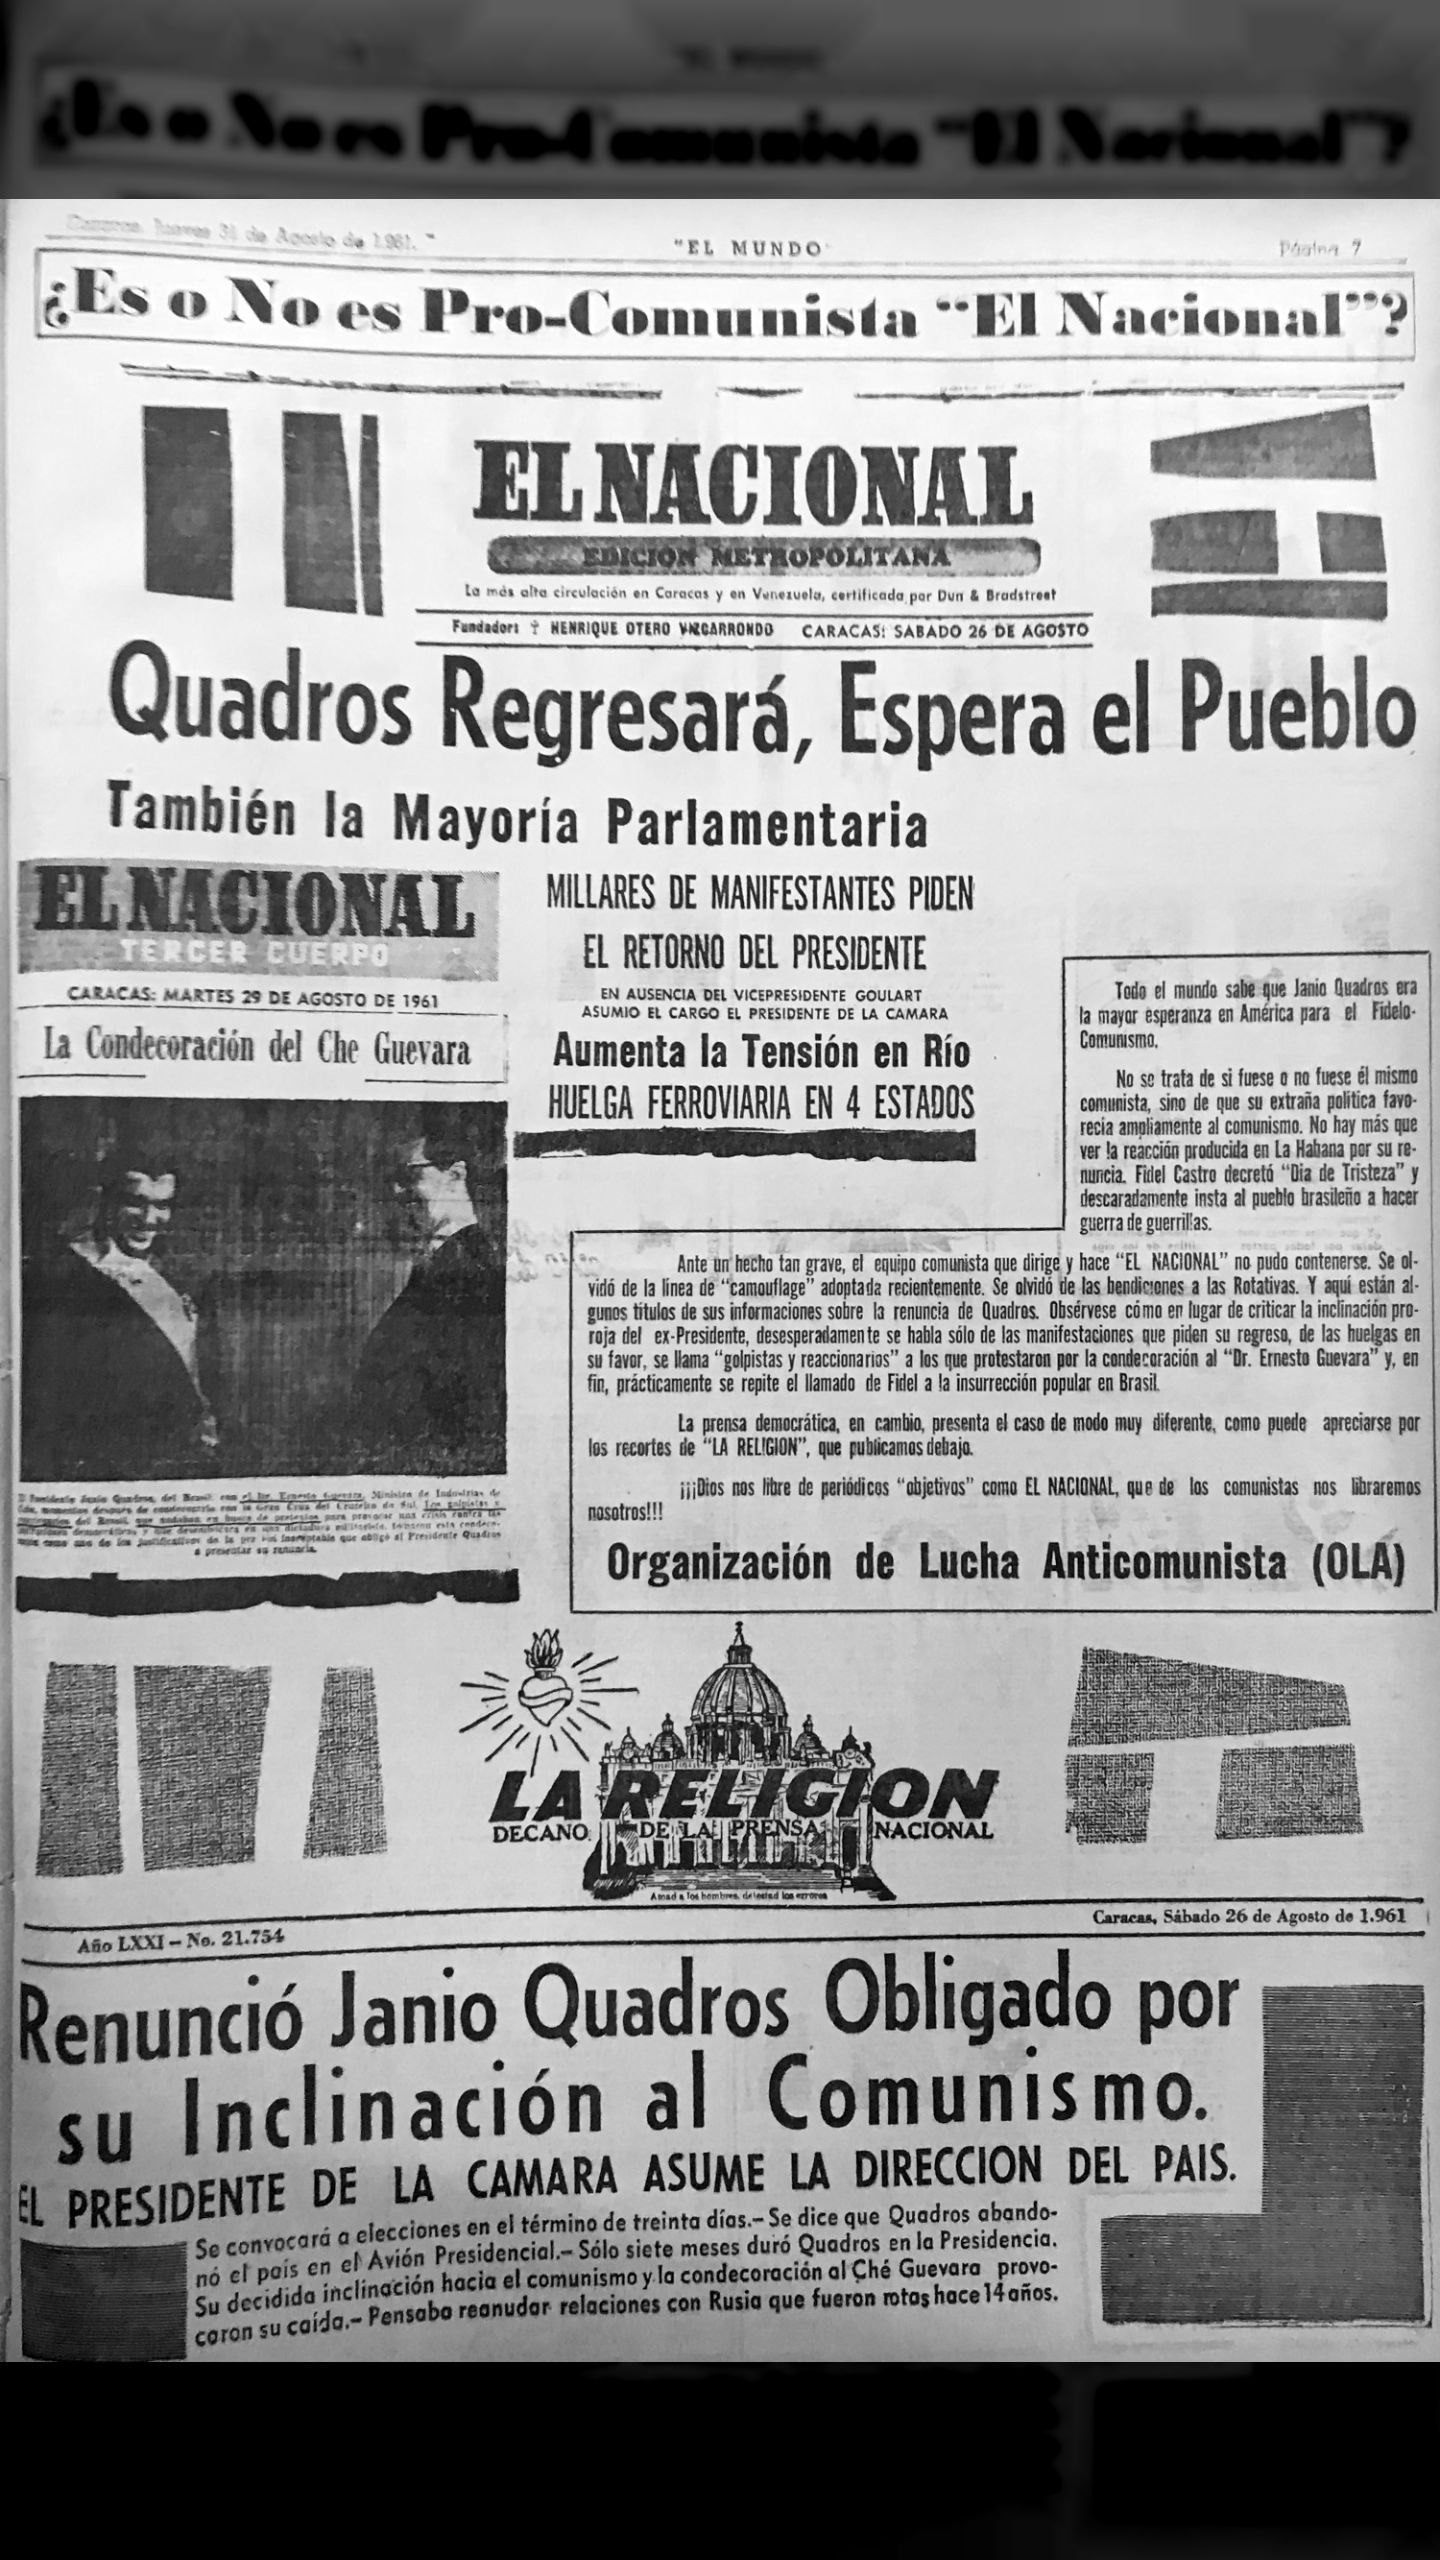 ¿Es o No es pro-comunista El Nacional? (El Mundo, 31 de agosto 1961)